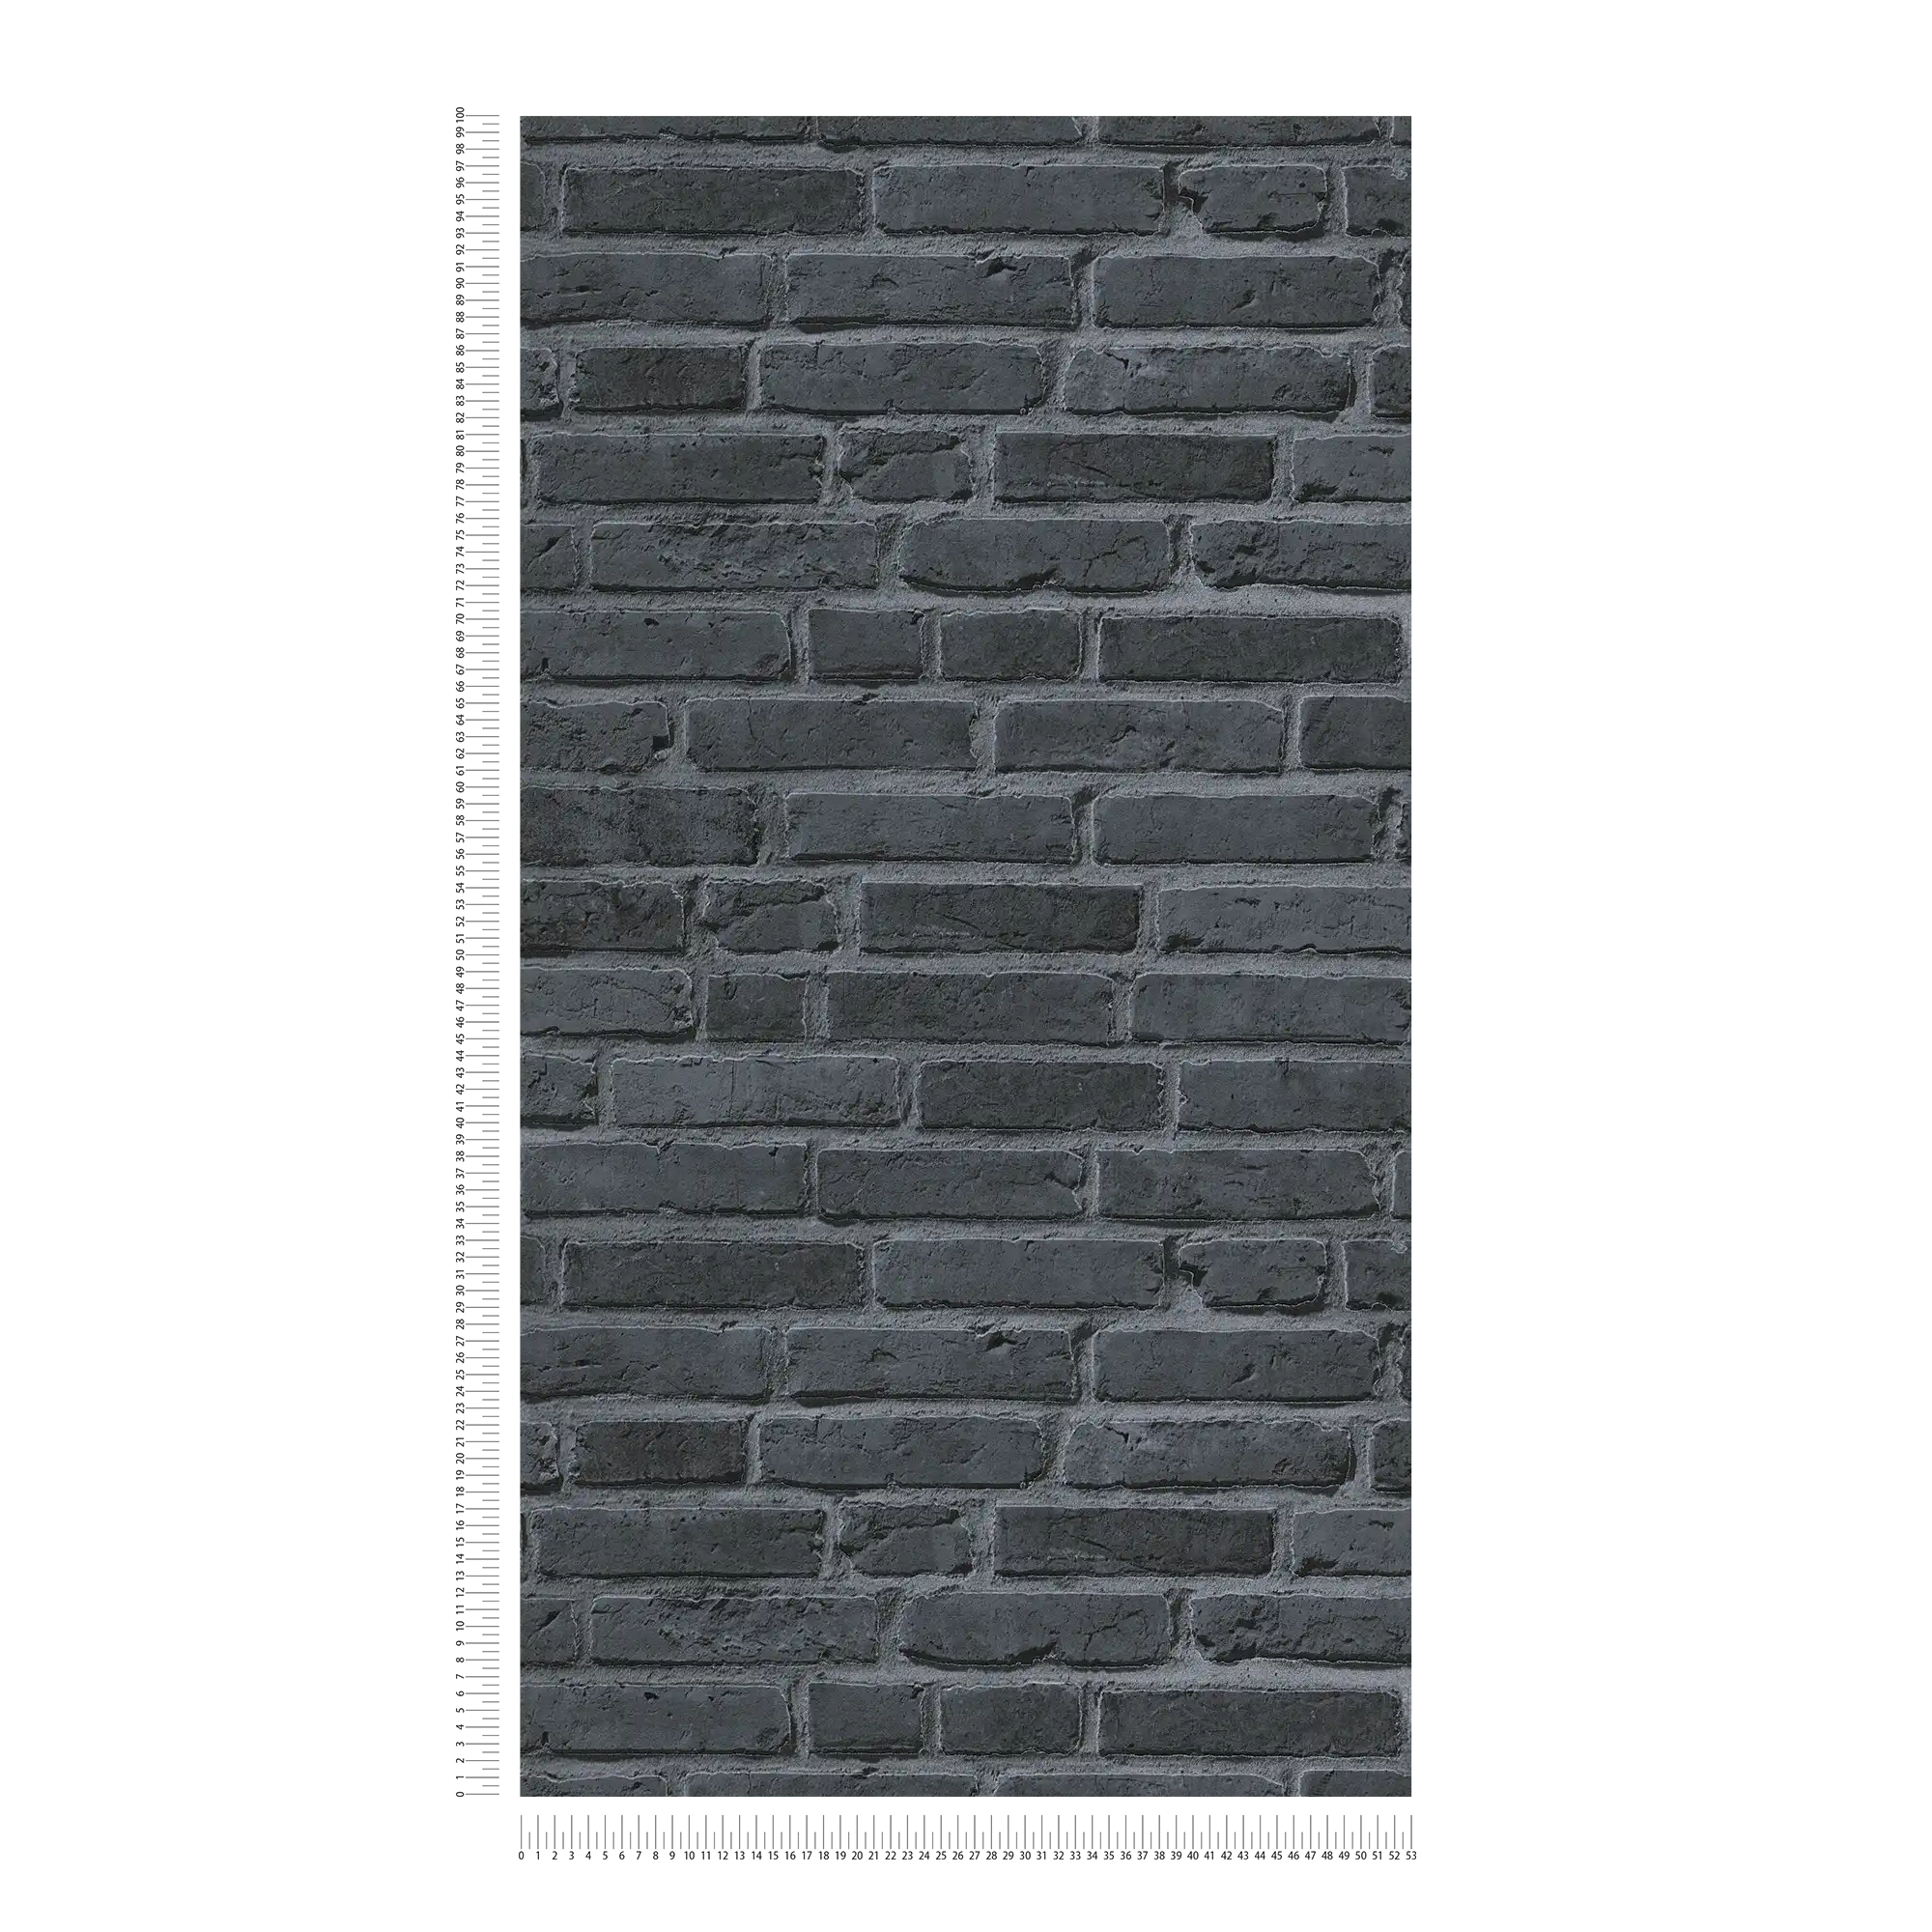             Papier peint imitation pierre avec briques noires - noir, gris
        